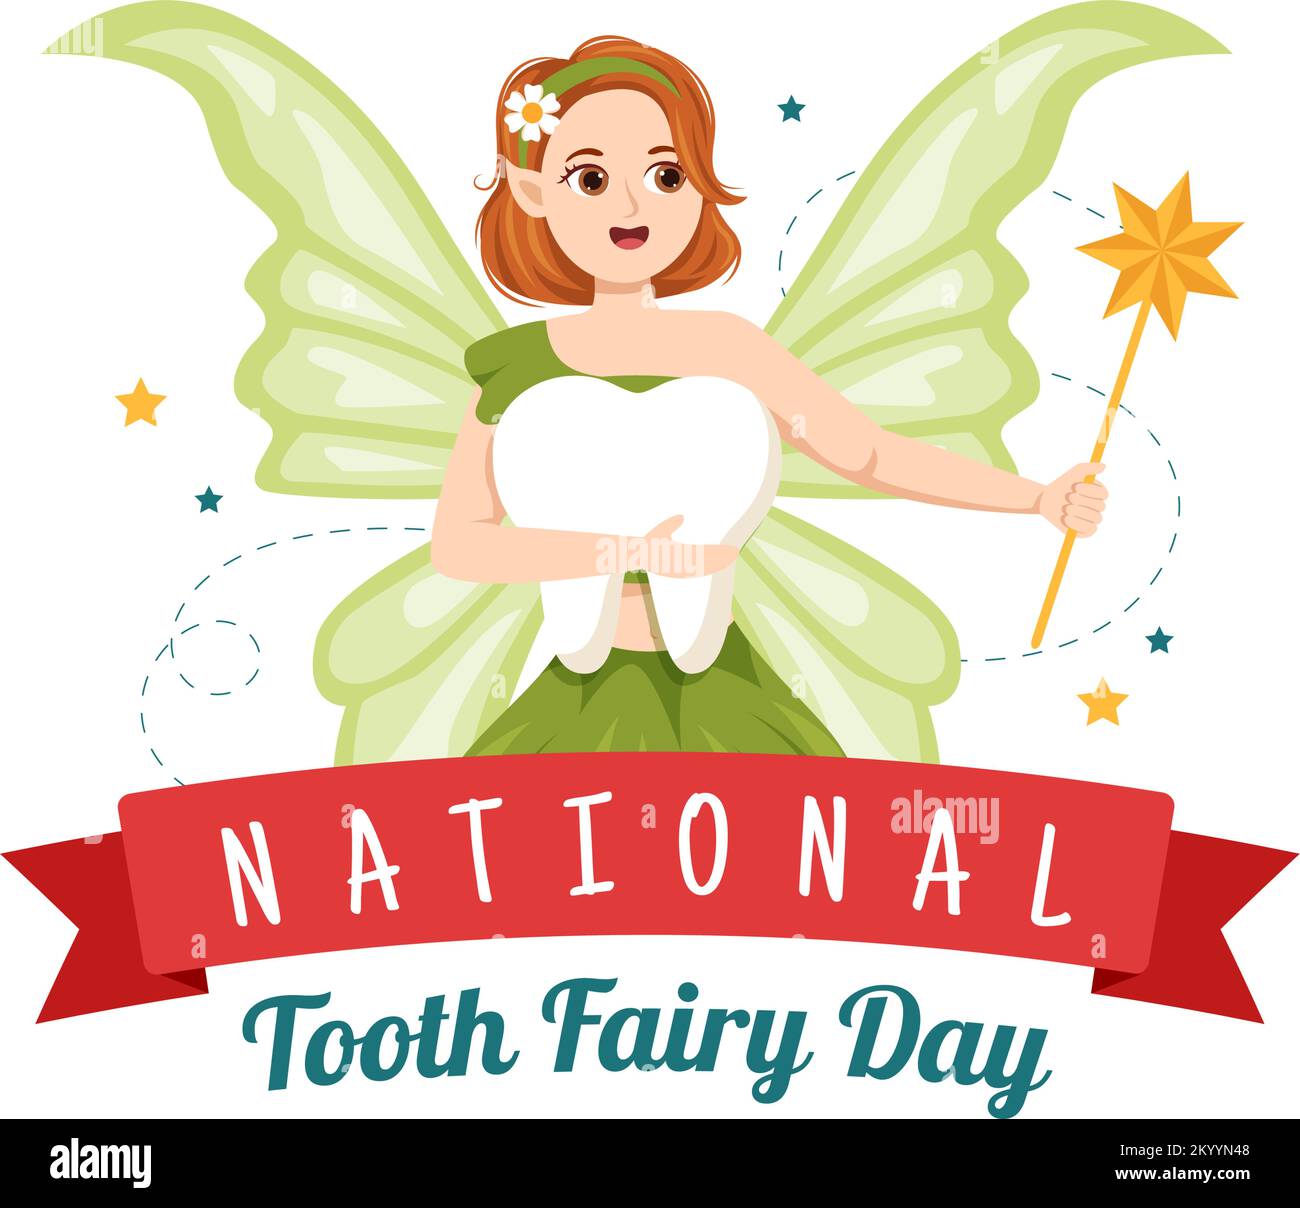 Giornata della Fata nazionale del dente con la bambina per aiutare i capretti per il trattamento dentistico misura come un Poster in illustrazione di modello disegnata a mano del cartoon piano Illustrazione Vettoriale